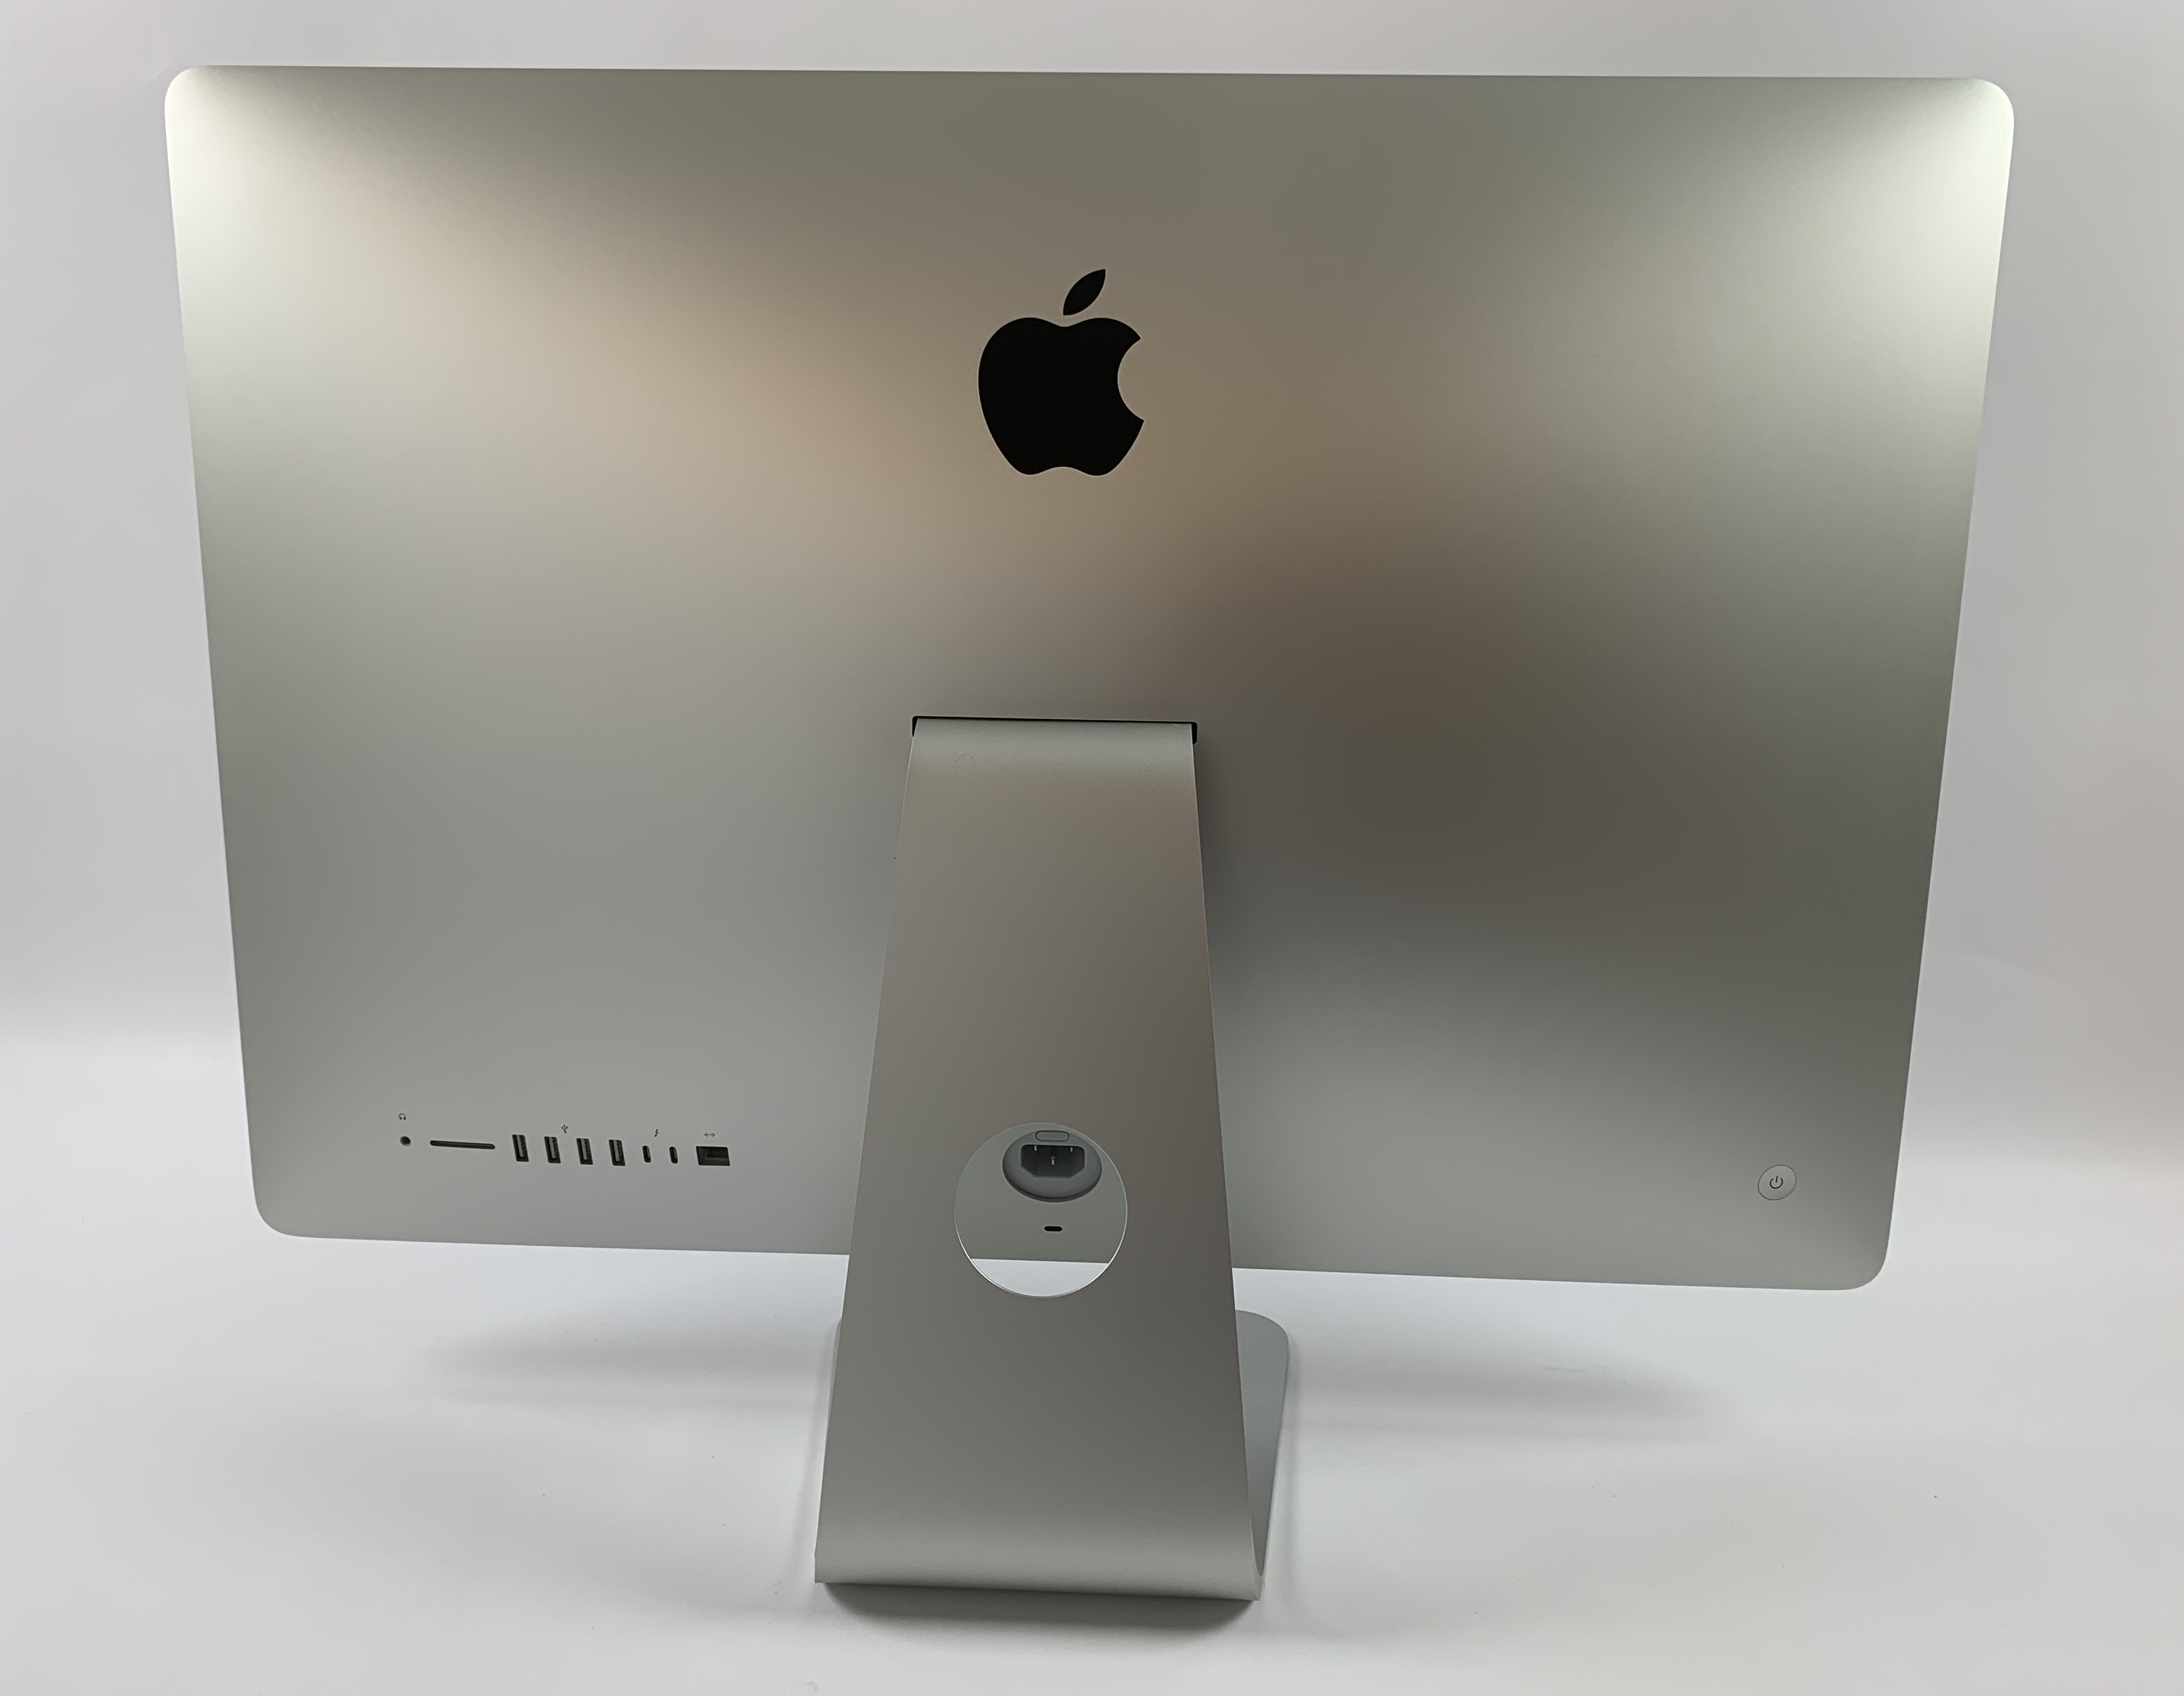 iMac 27" Retina 5K Mid 2020 (Intel 6-Core i5 3.1 GHz 128 GB RAM 256 GB SSD), Intel 6-Core i5 3.1 GHz, 128 GB RAM, 256 GB SSD, Bild 2